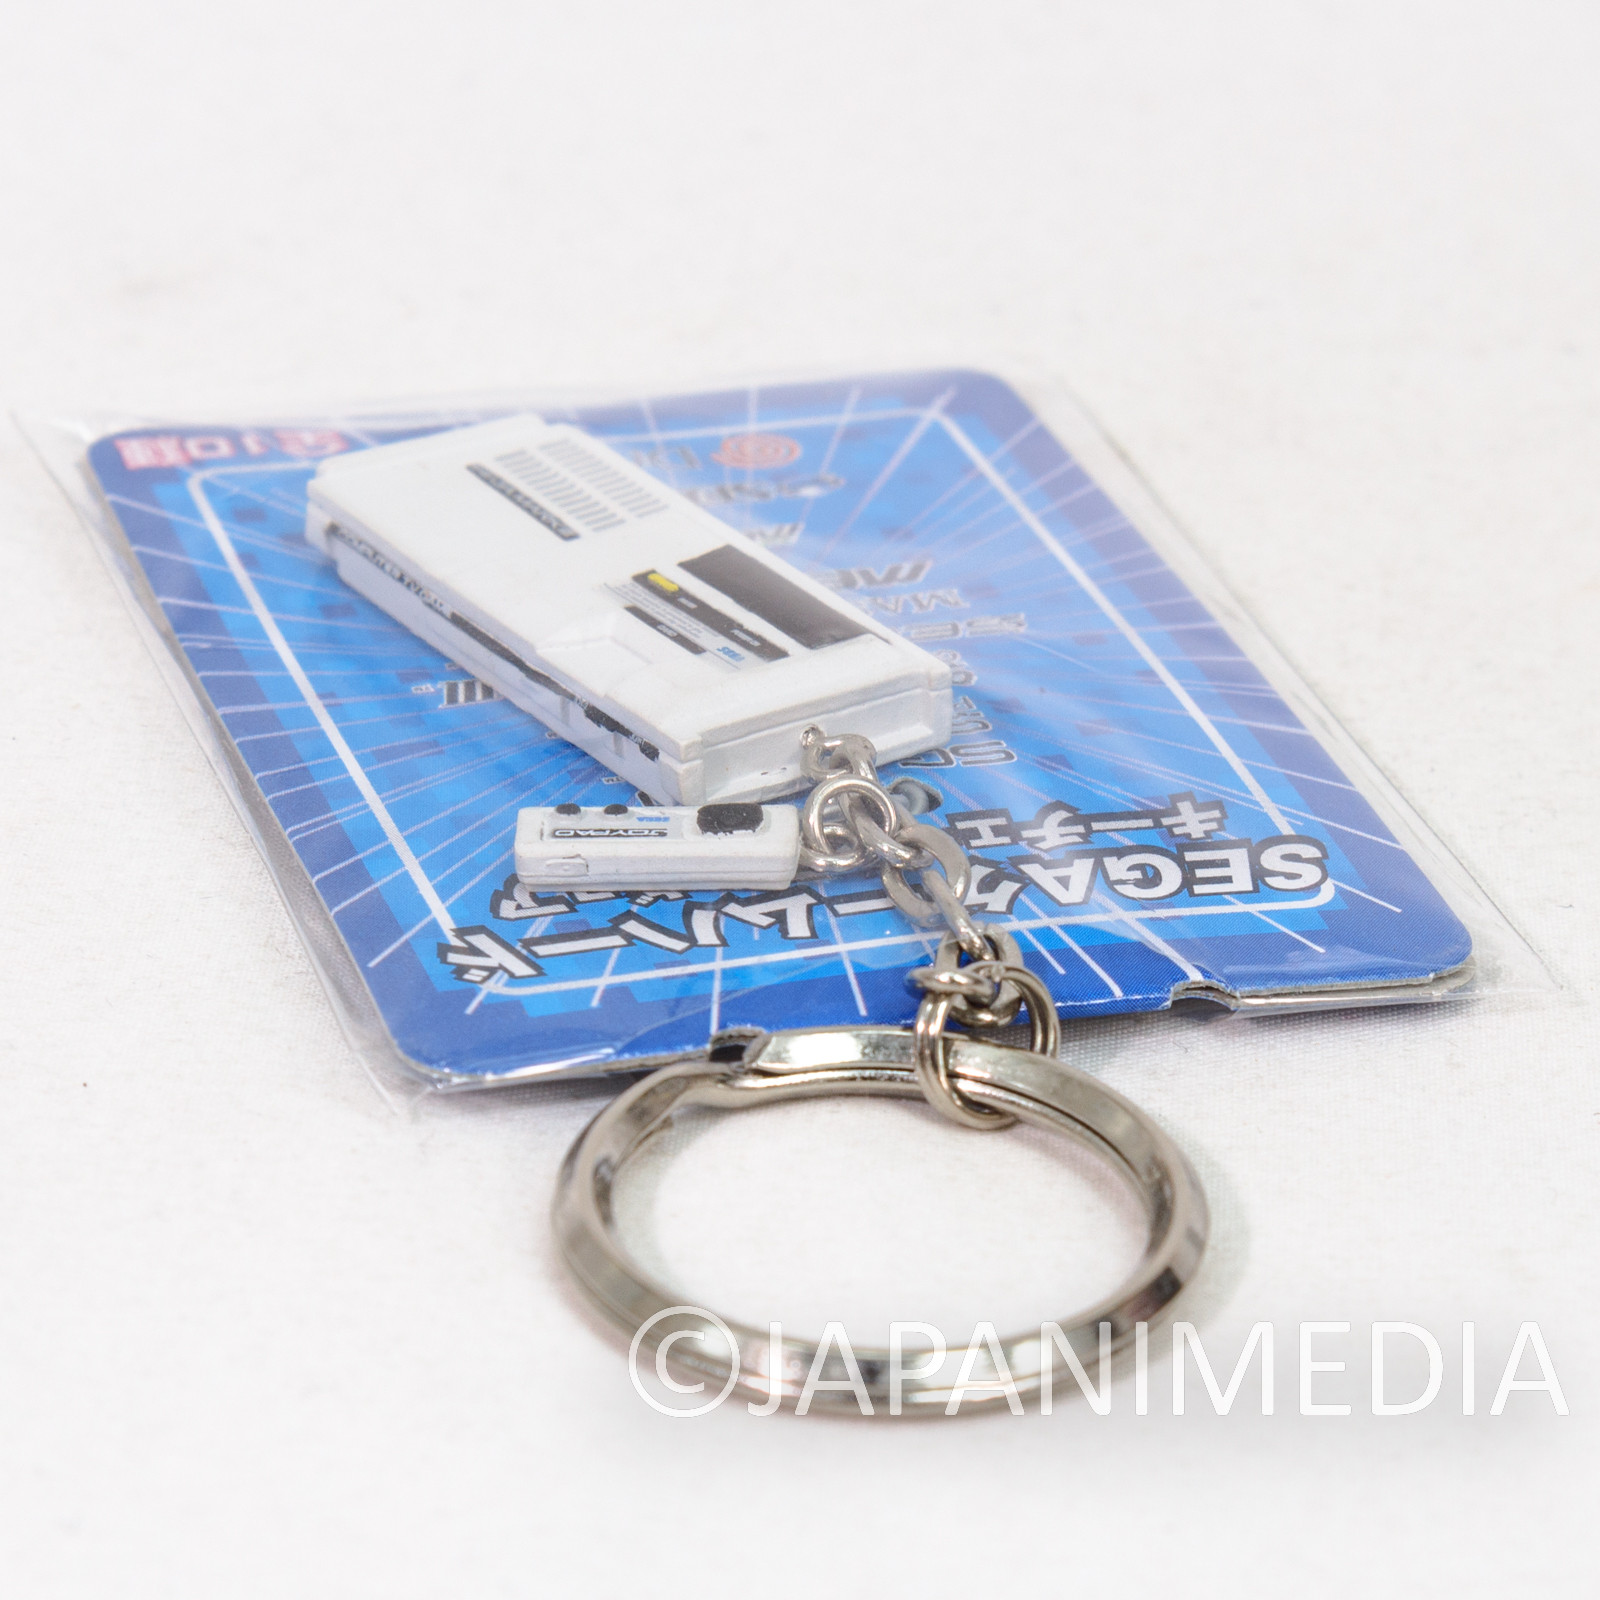 RARE!! SEGA Game Console Miniature Figure Keychain SEGA MarkIII